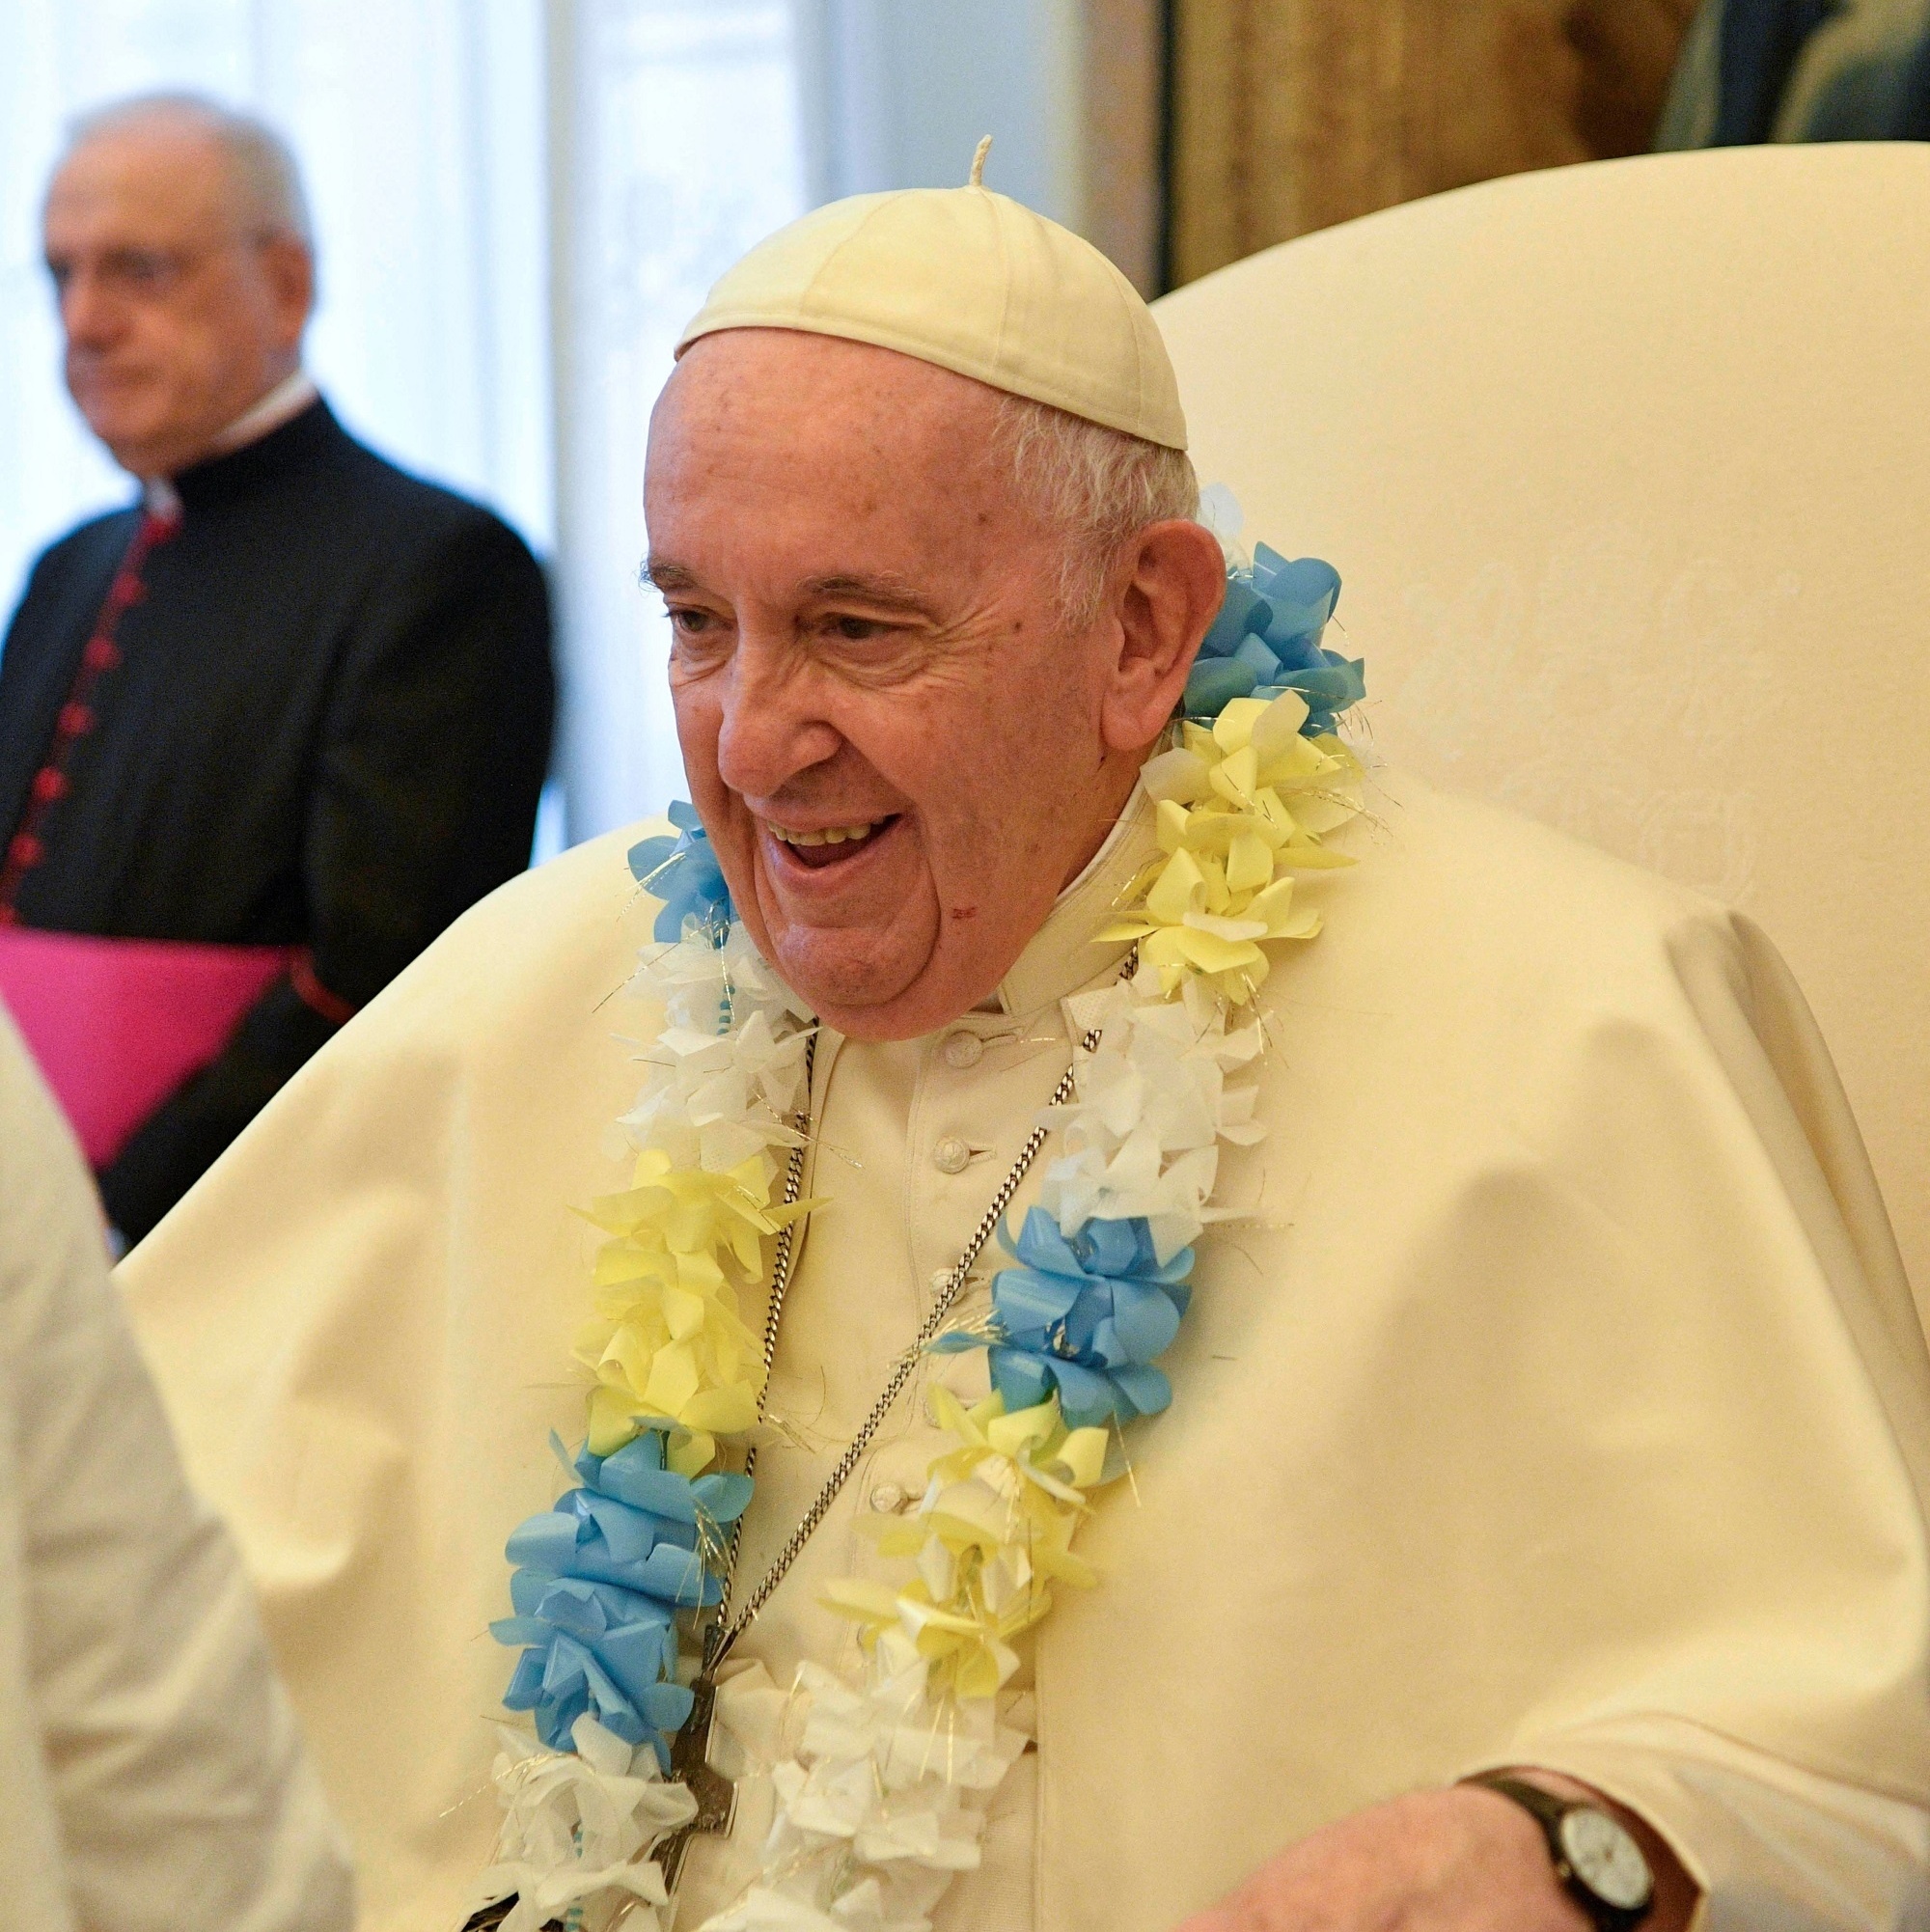 10 anos de Papa Francisco: Canção Nova realiza cobertura comemorativa